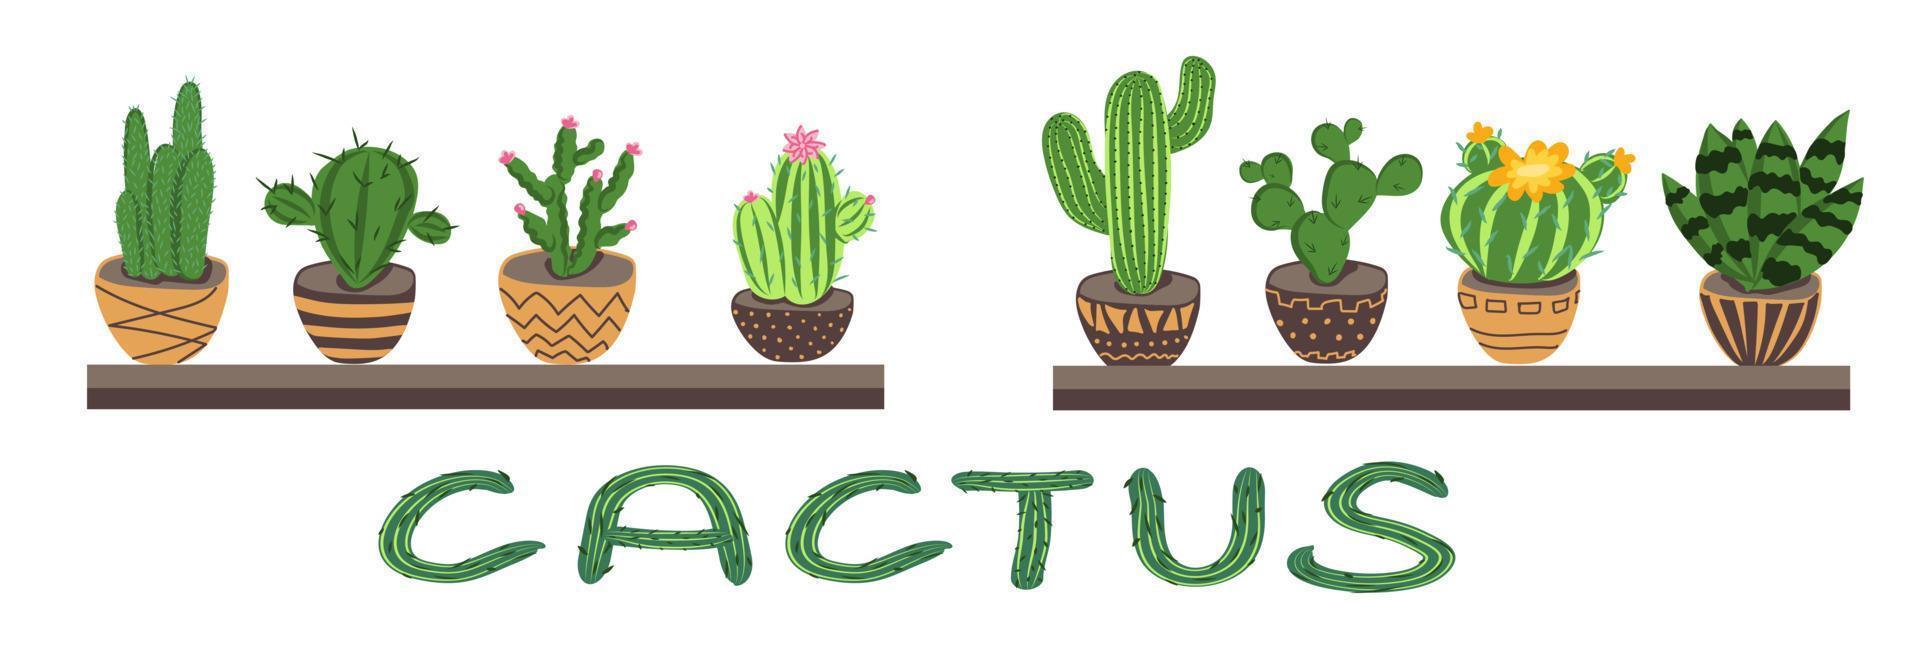 conjunto vectorial de coloridas plantas de cactus en macetas. vector